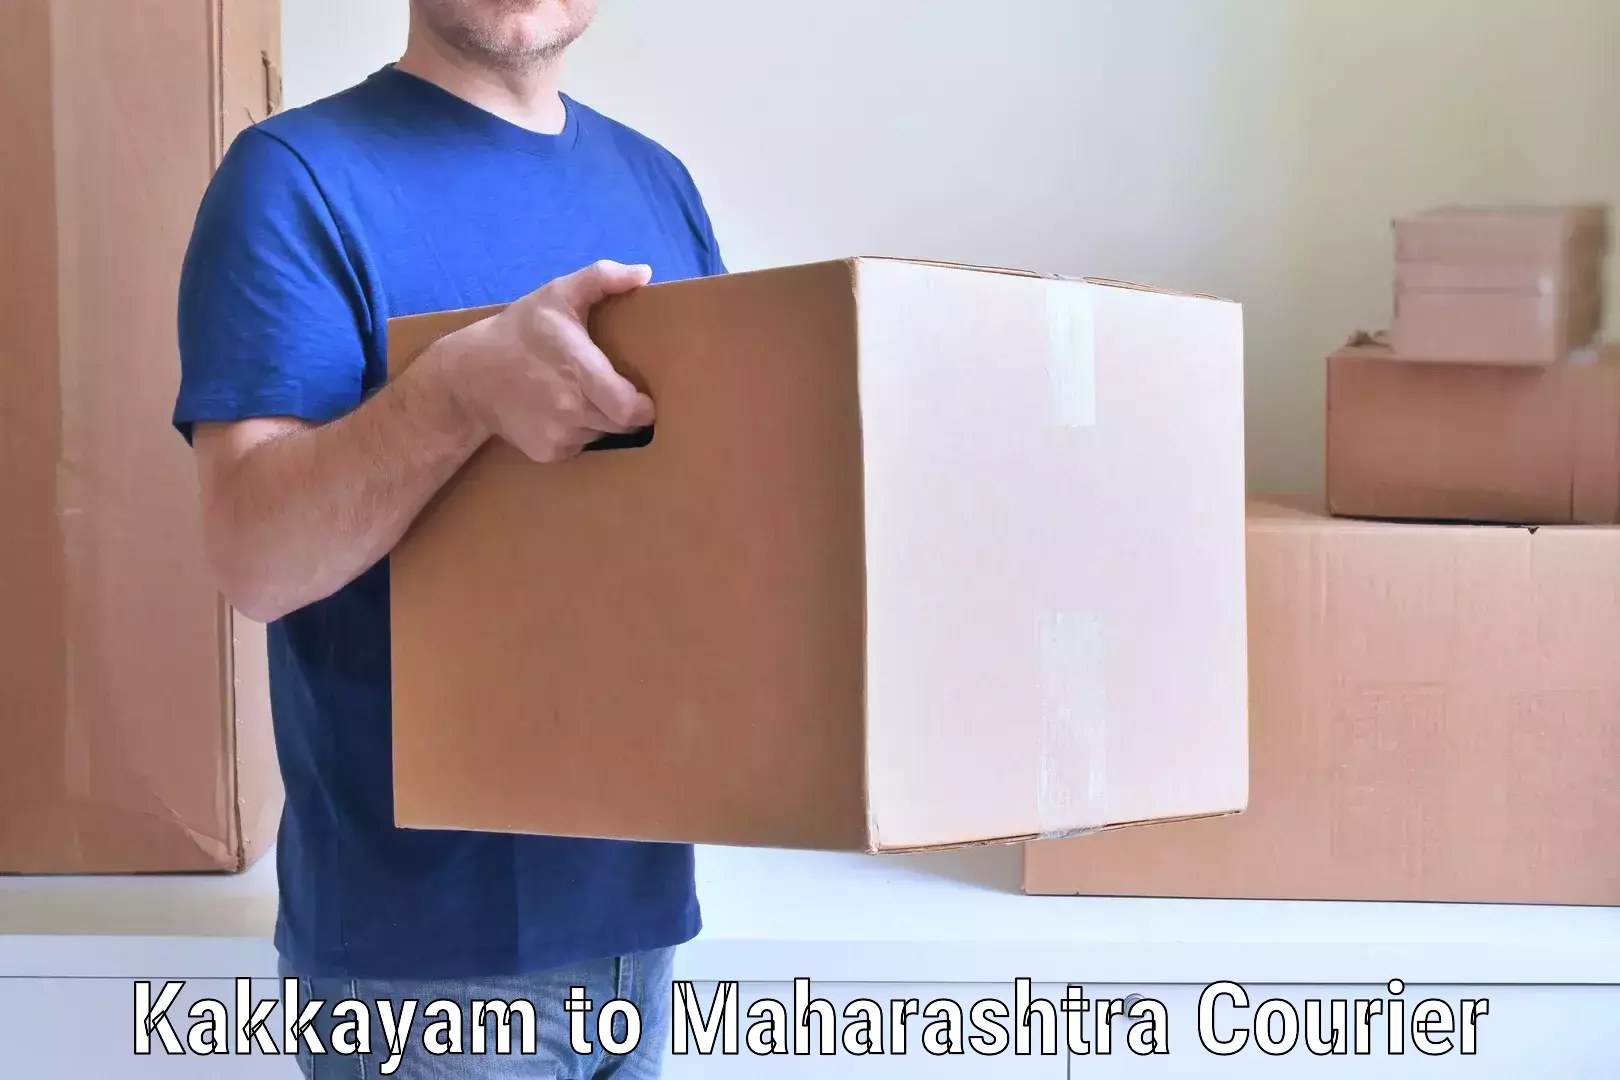 Household moving and storage in Kakkayam to Maharashtra